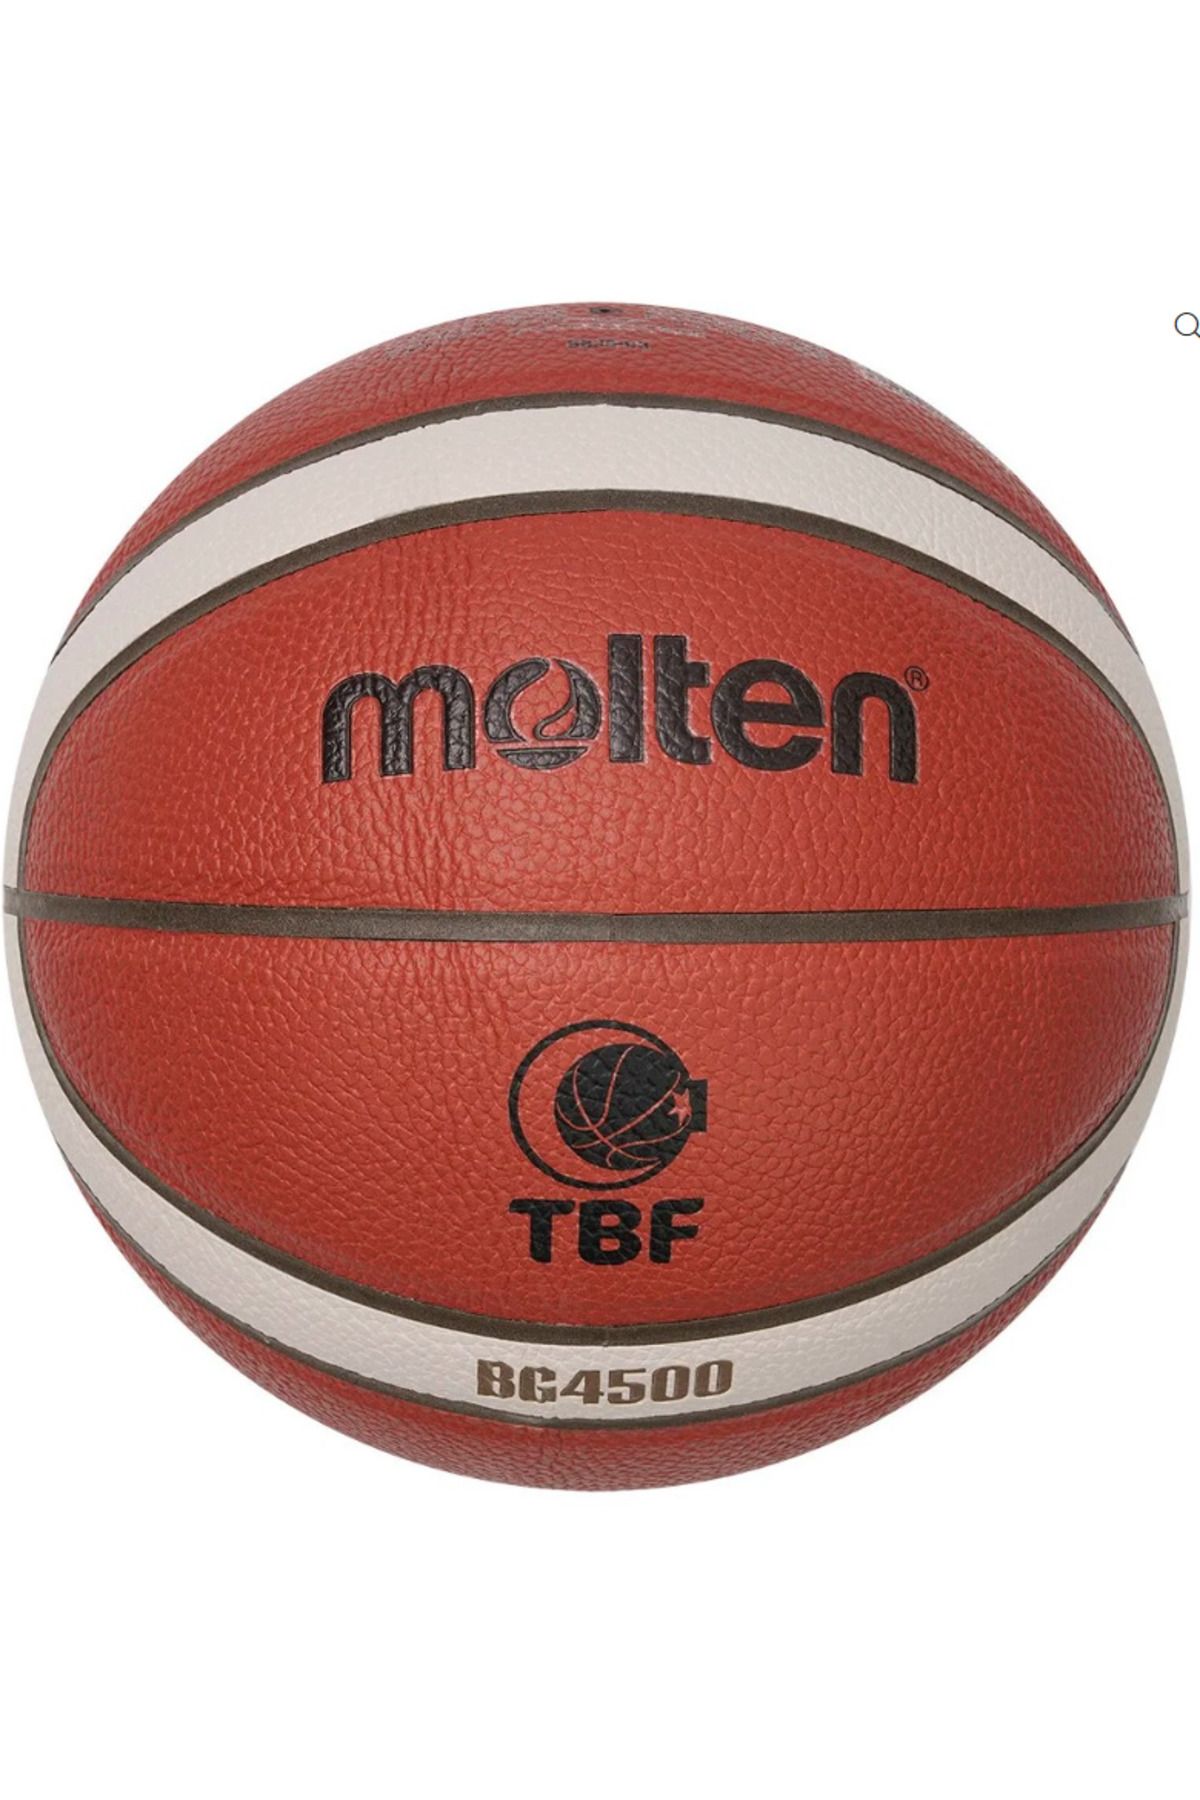 Molten Fıba Onaylı 7 No Tbl Basketbol Maç Topu B7g4500